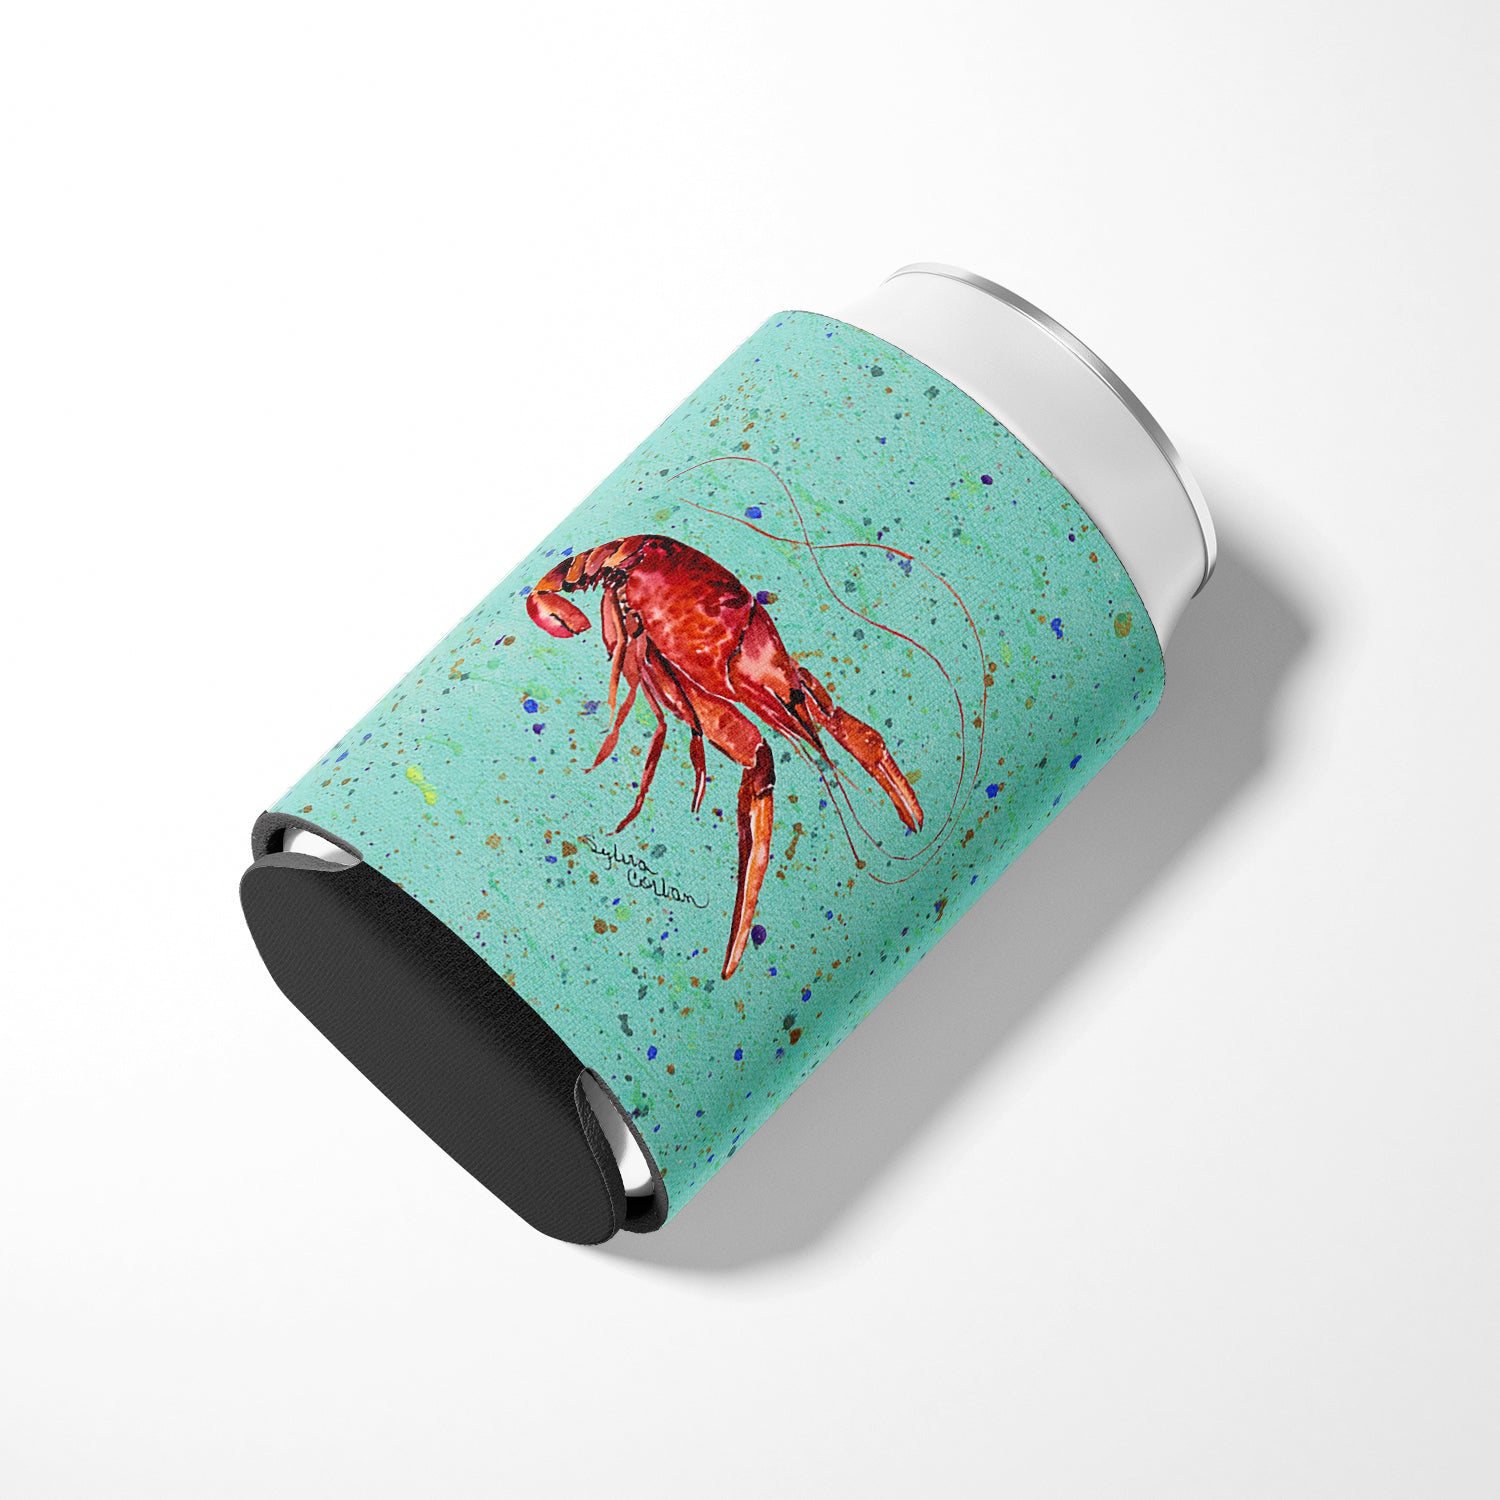 Crawfish  on Teal Can or Bottle Beverage Insulator Hugger.